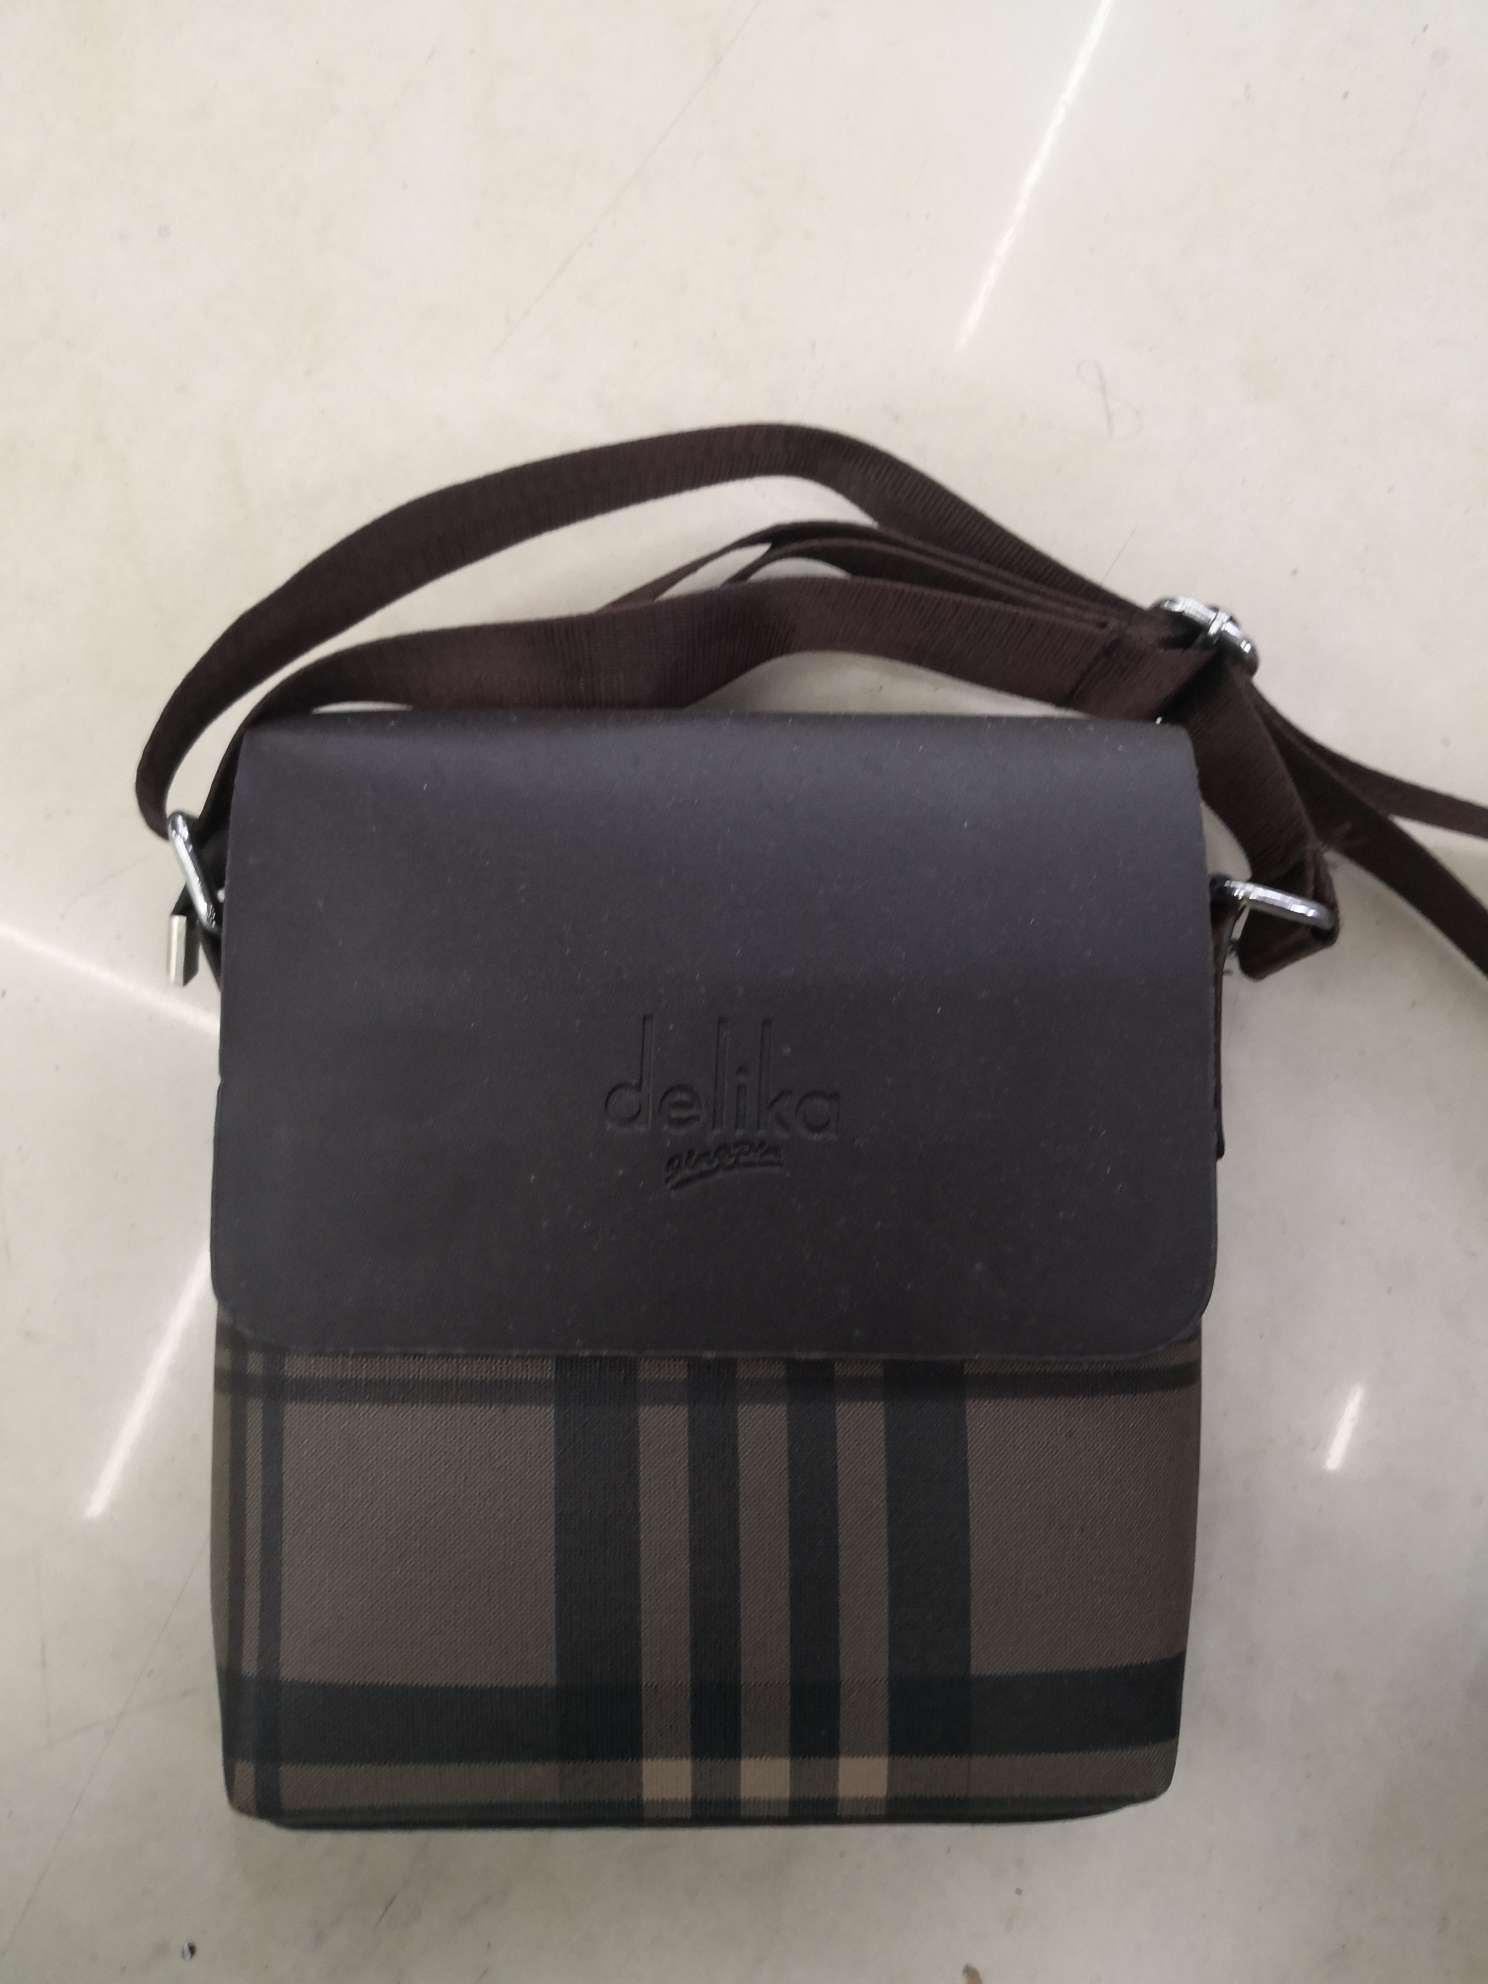 Trendy Korean striped crossbody bag for men